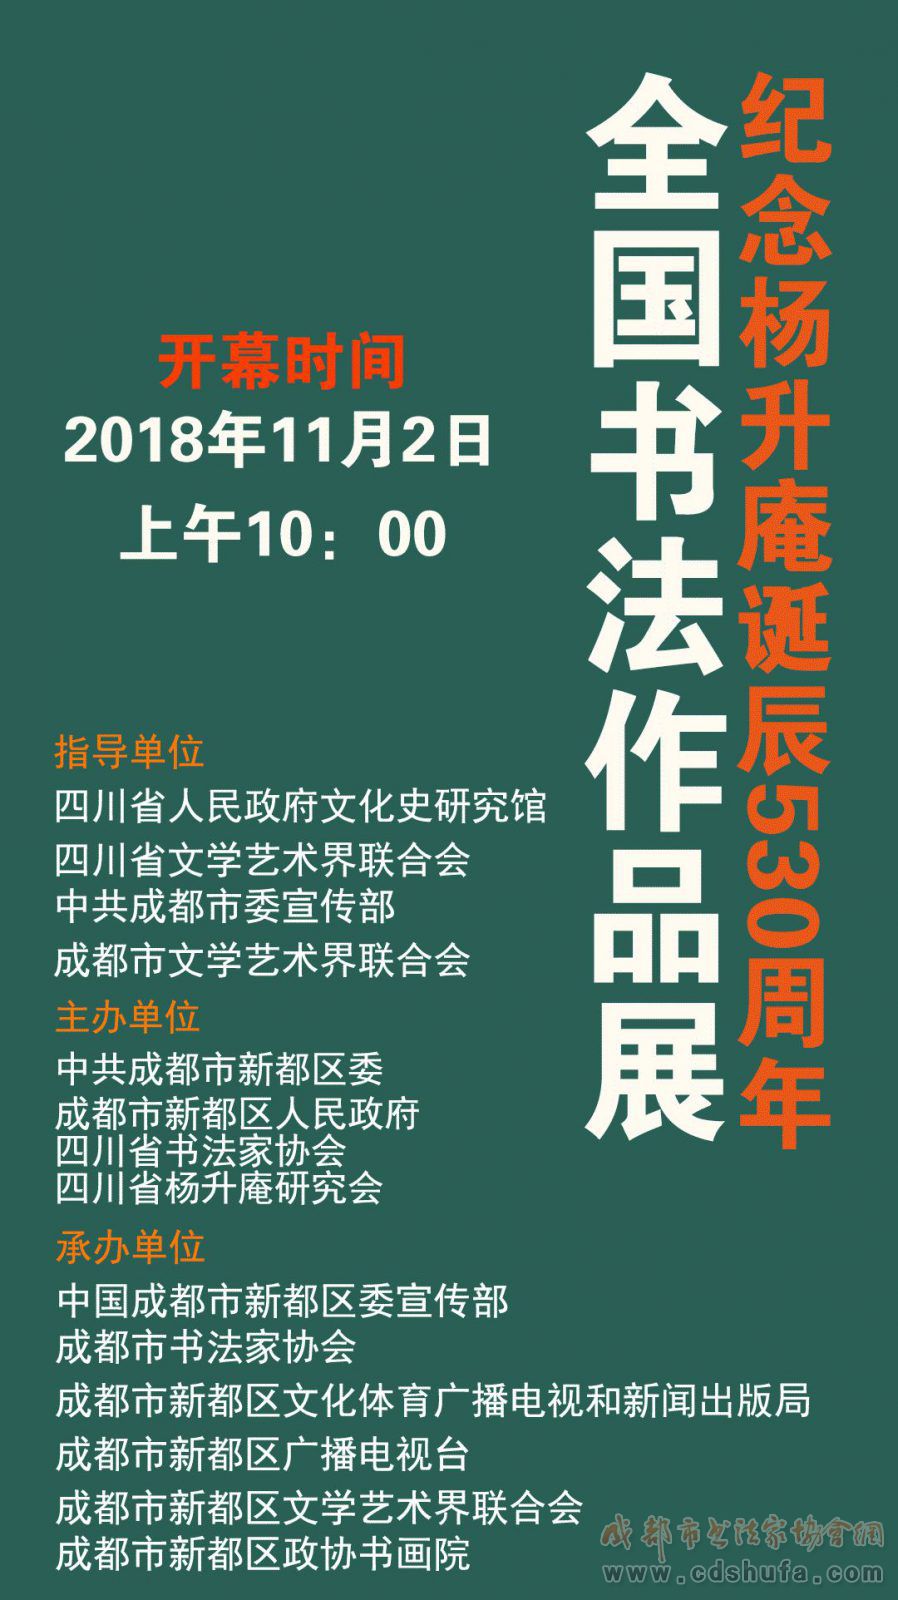 纪念杨升庵诞辰530周年全国书法作品展将于11月2日开幕 - 协会动态 - 成都市书法家协会